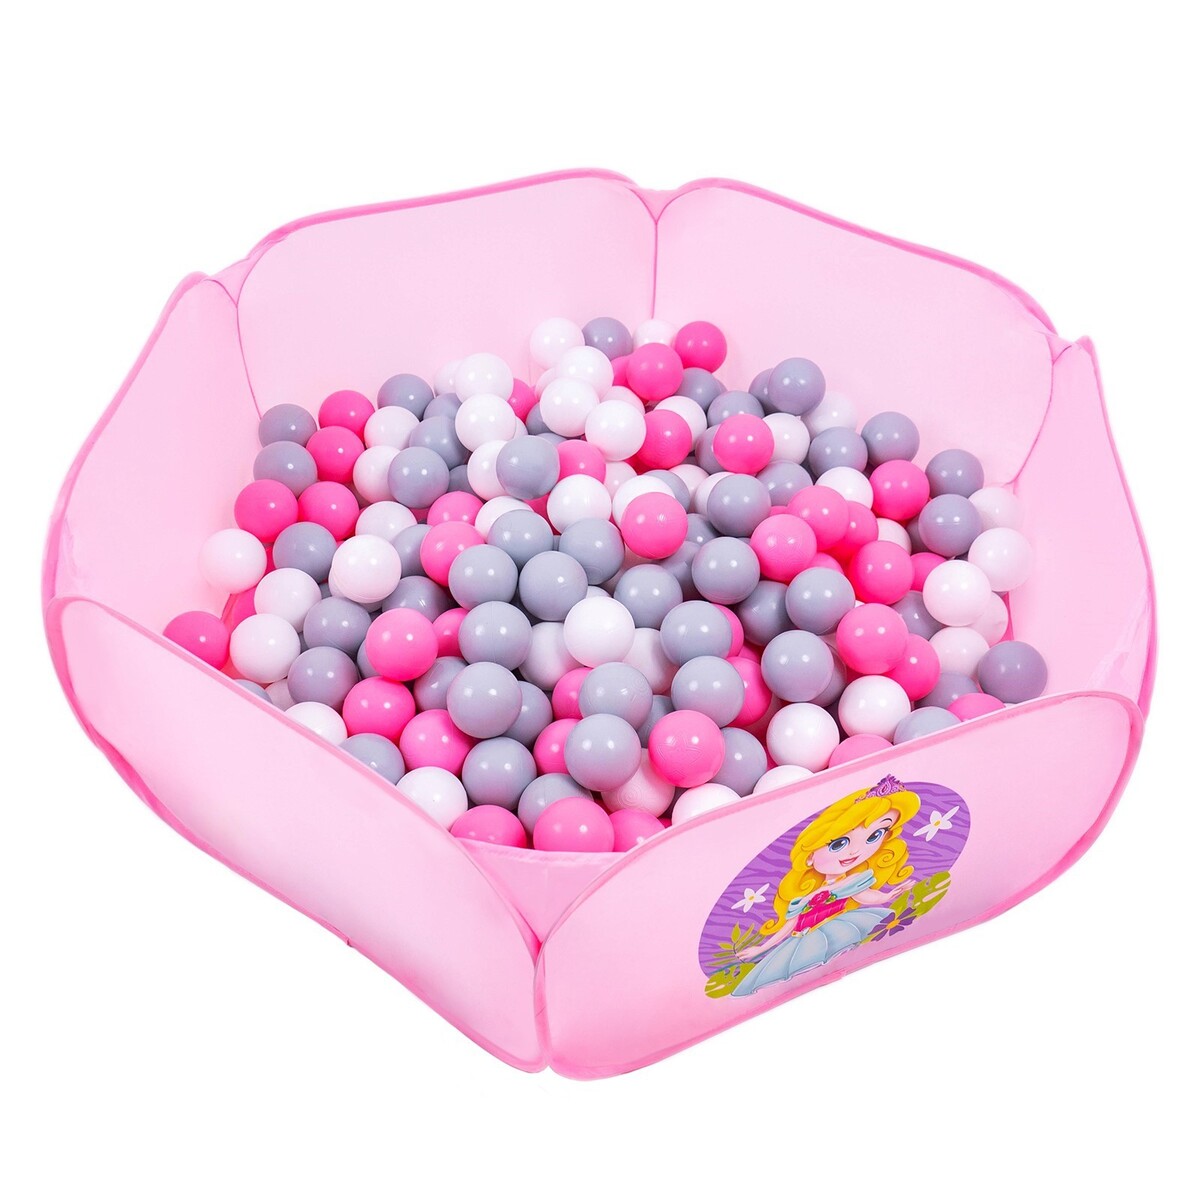 Шарики для сухого бассейна с рисунком, диаметр шара 7,5 см, набор 60 штук, цвет розовый, белый, серый шарики для сухого бассейна 30 штук диаметр 5 см